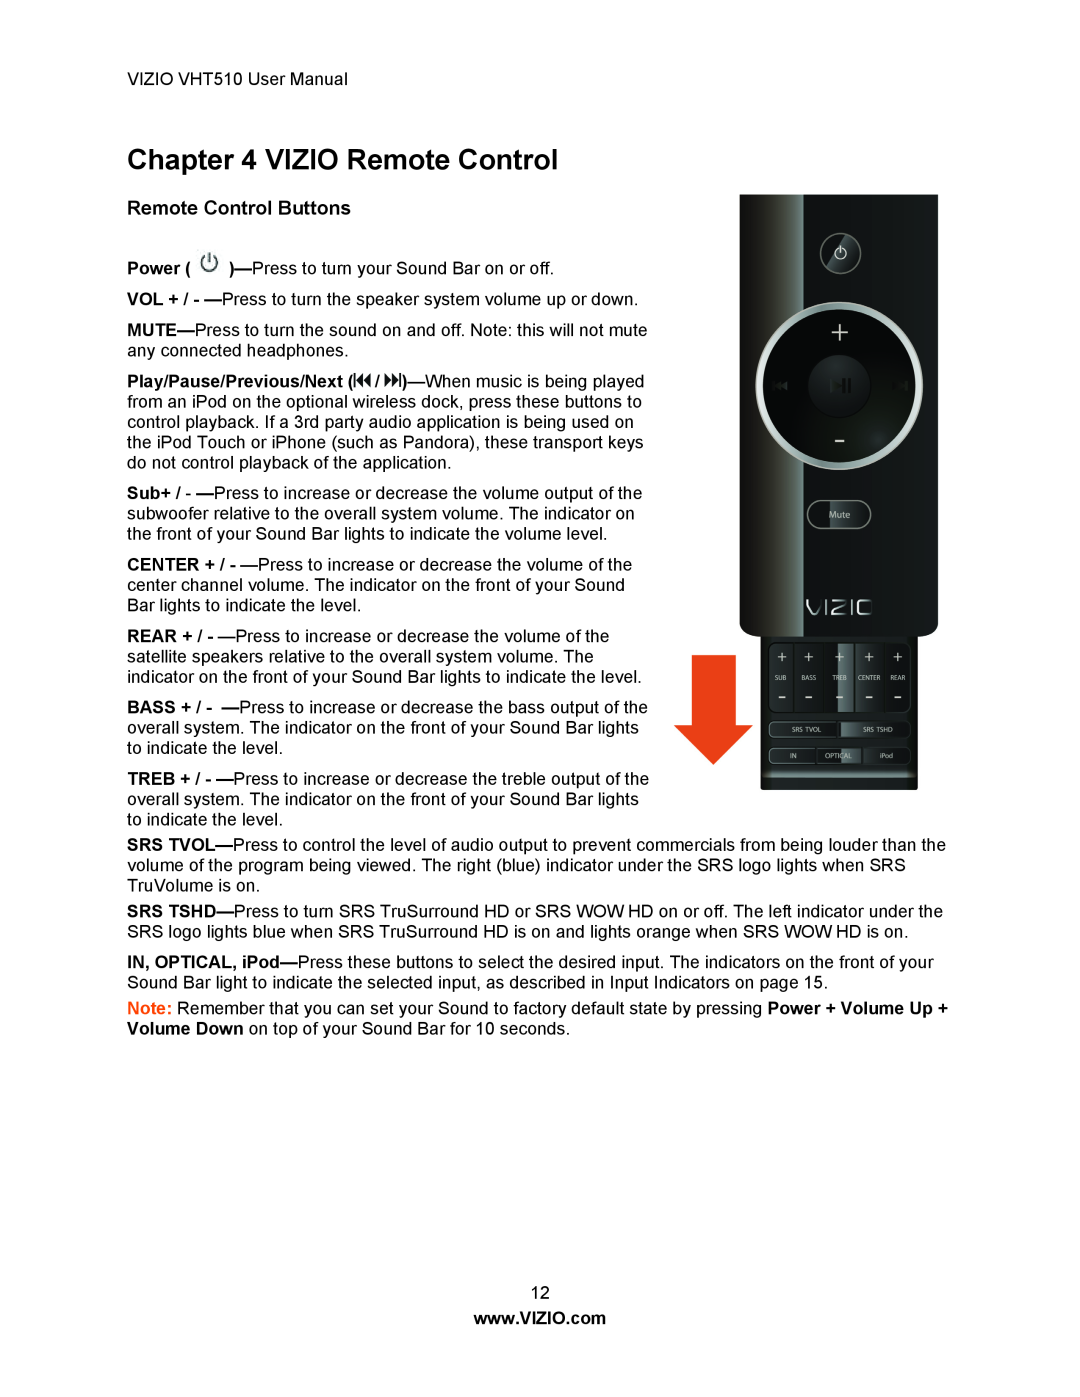 Vizio VHT510 user manual VIZIO Remote Control, Remote Control Buttons 